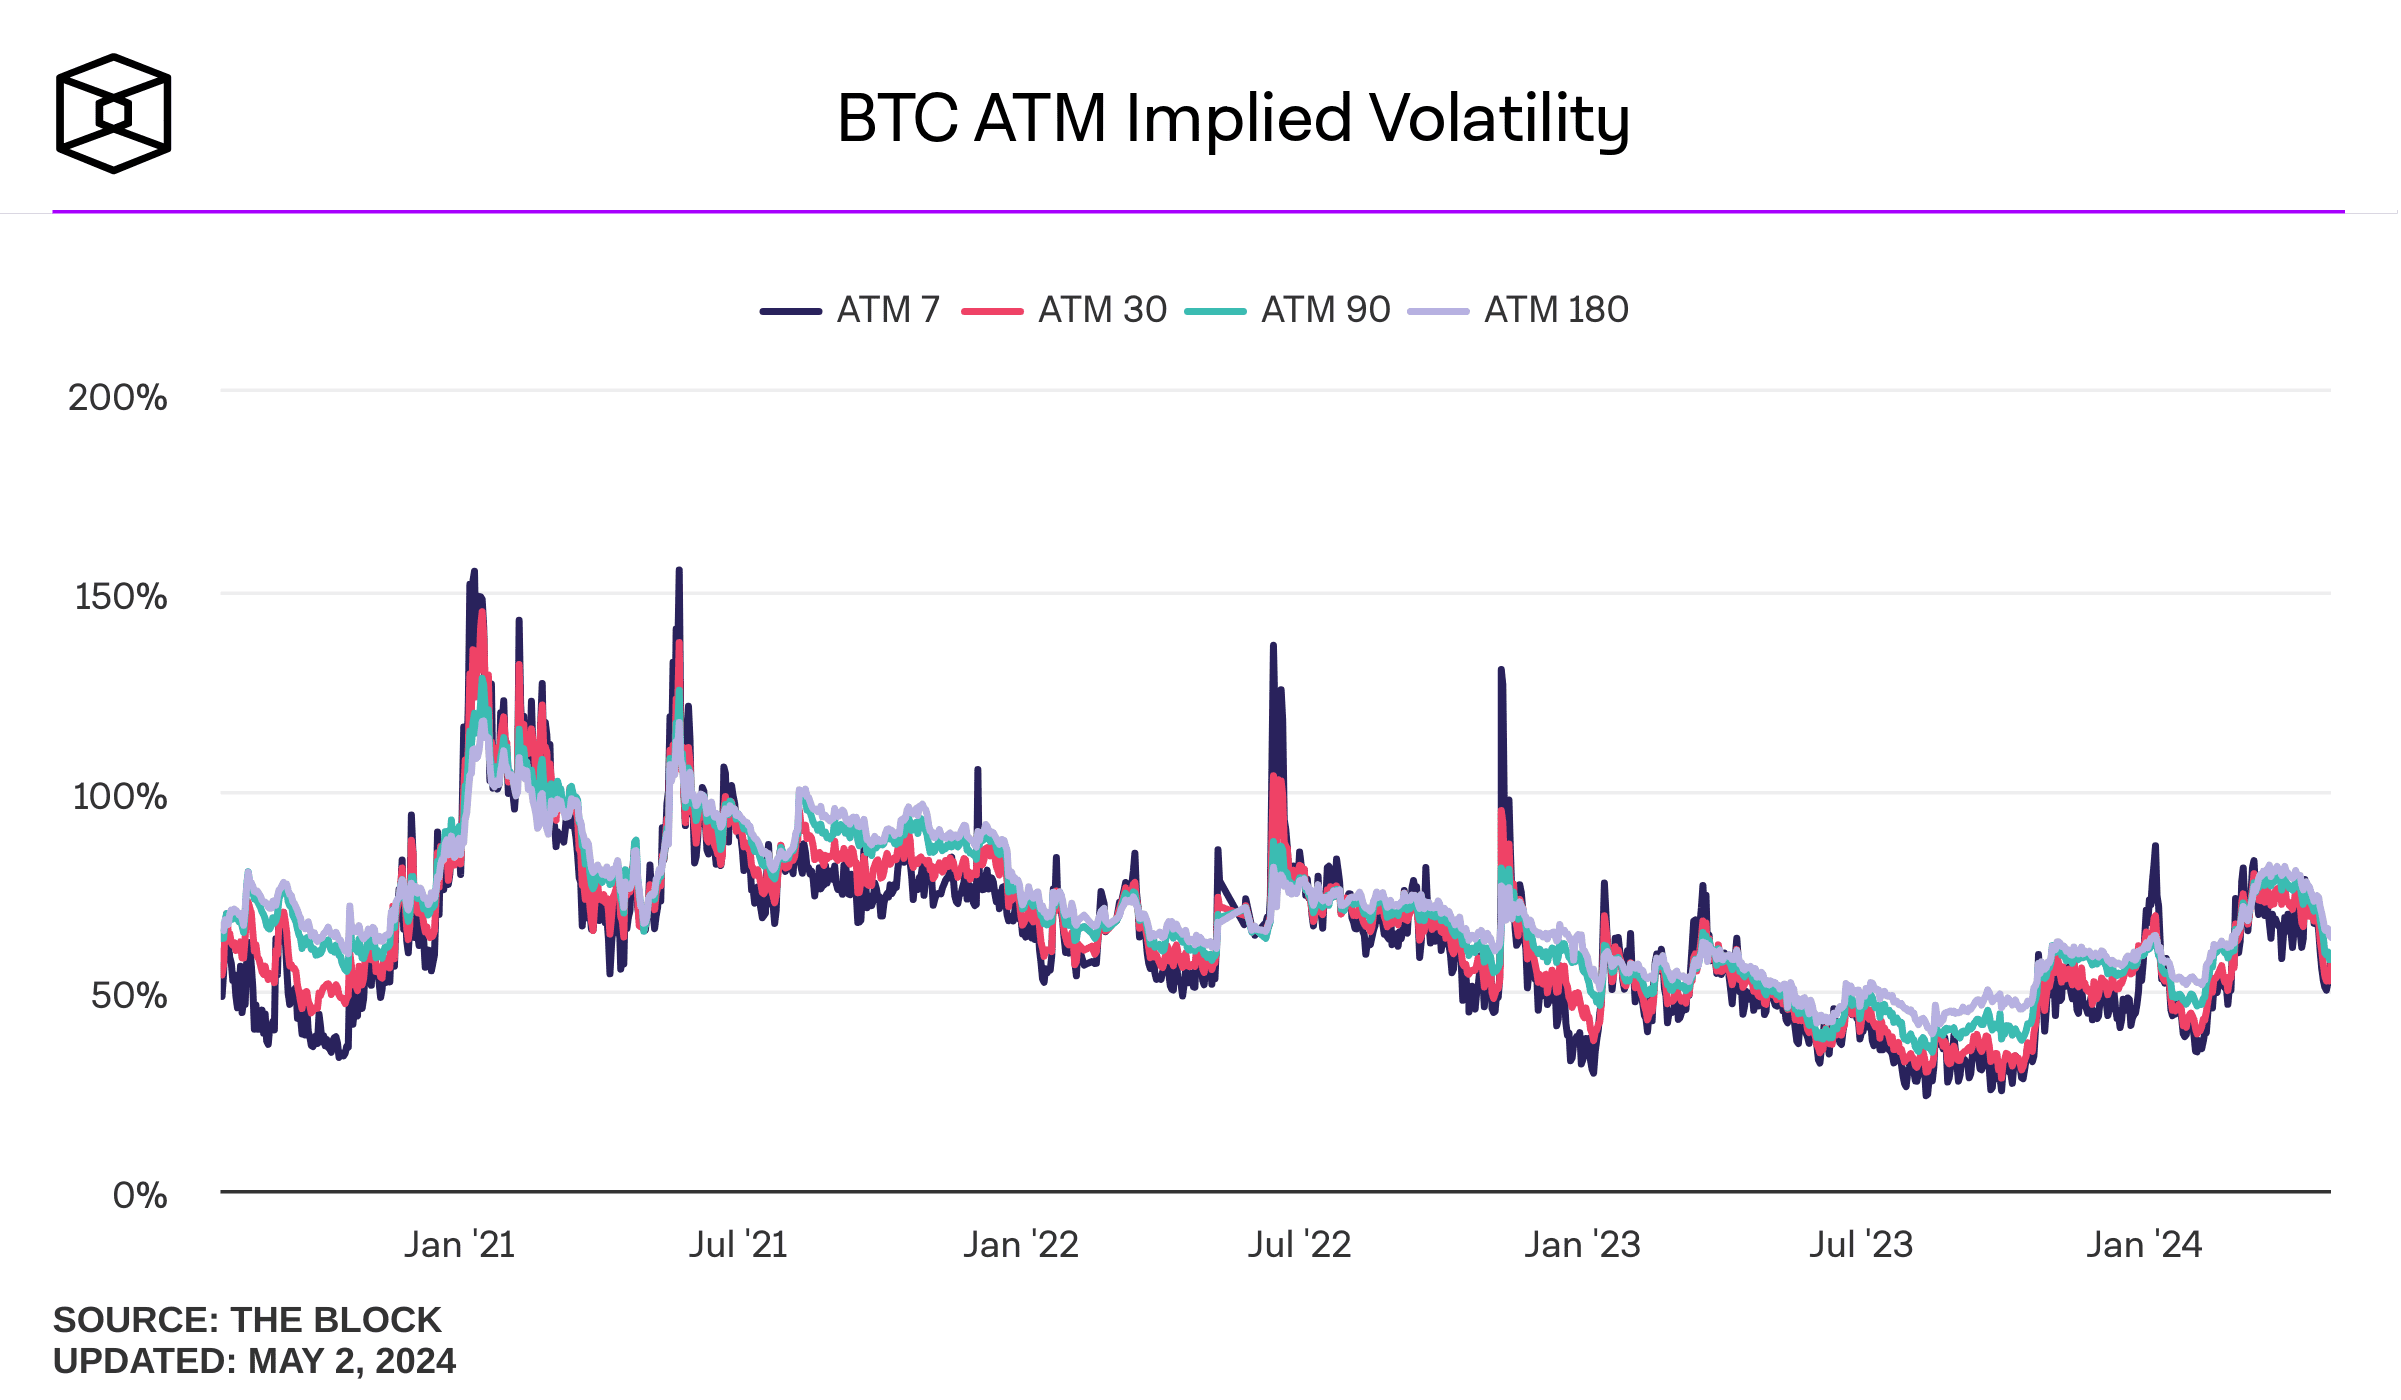 Los operadores de derivados de Bitcoin se preparan para un verano tranquilo, según un analista, con la volatilidad implícita de las opciones de Bitcoin y Ethereum mostrando una clara tendencia a la baja.